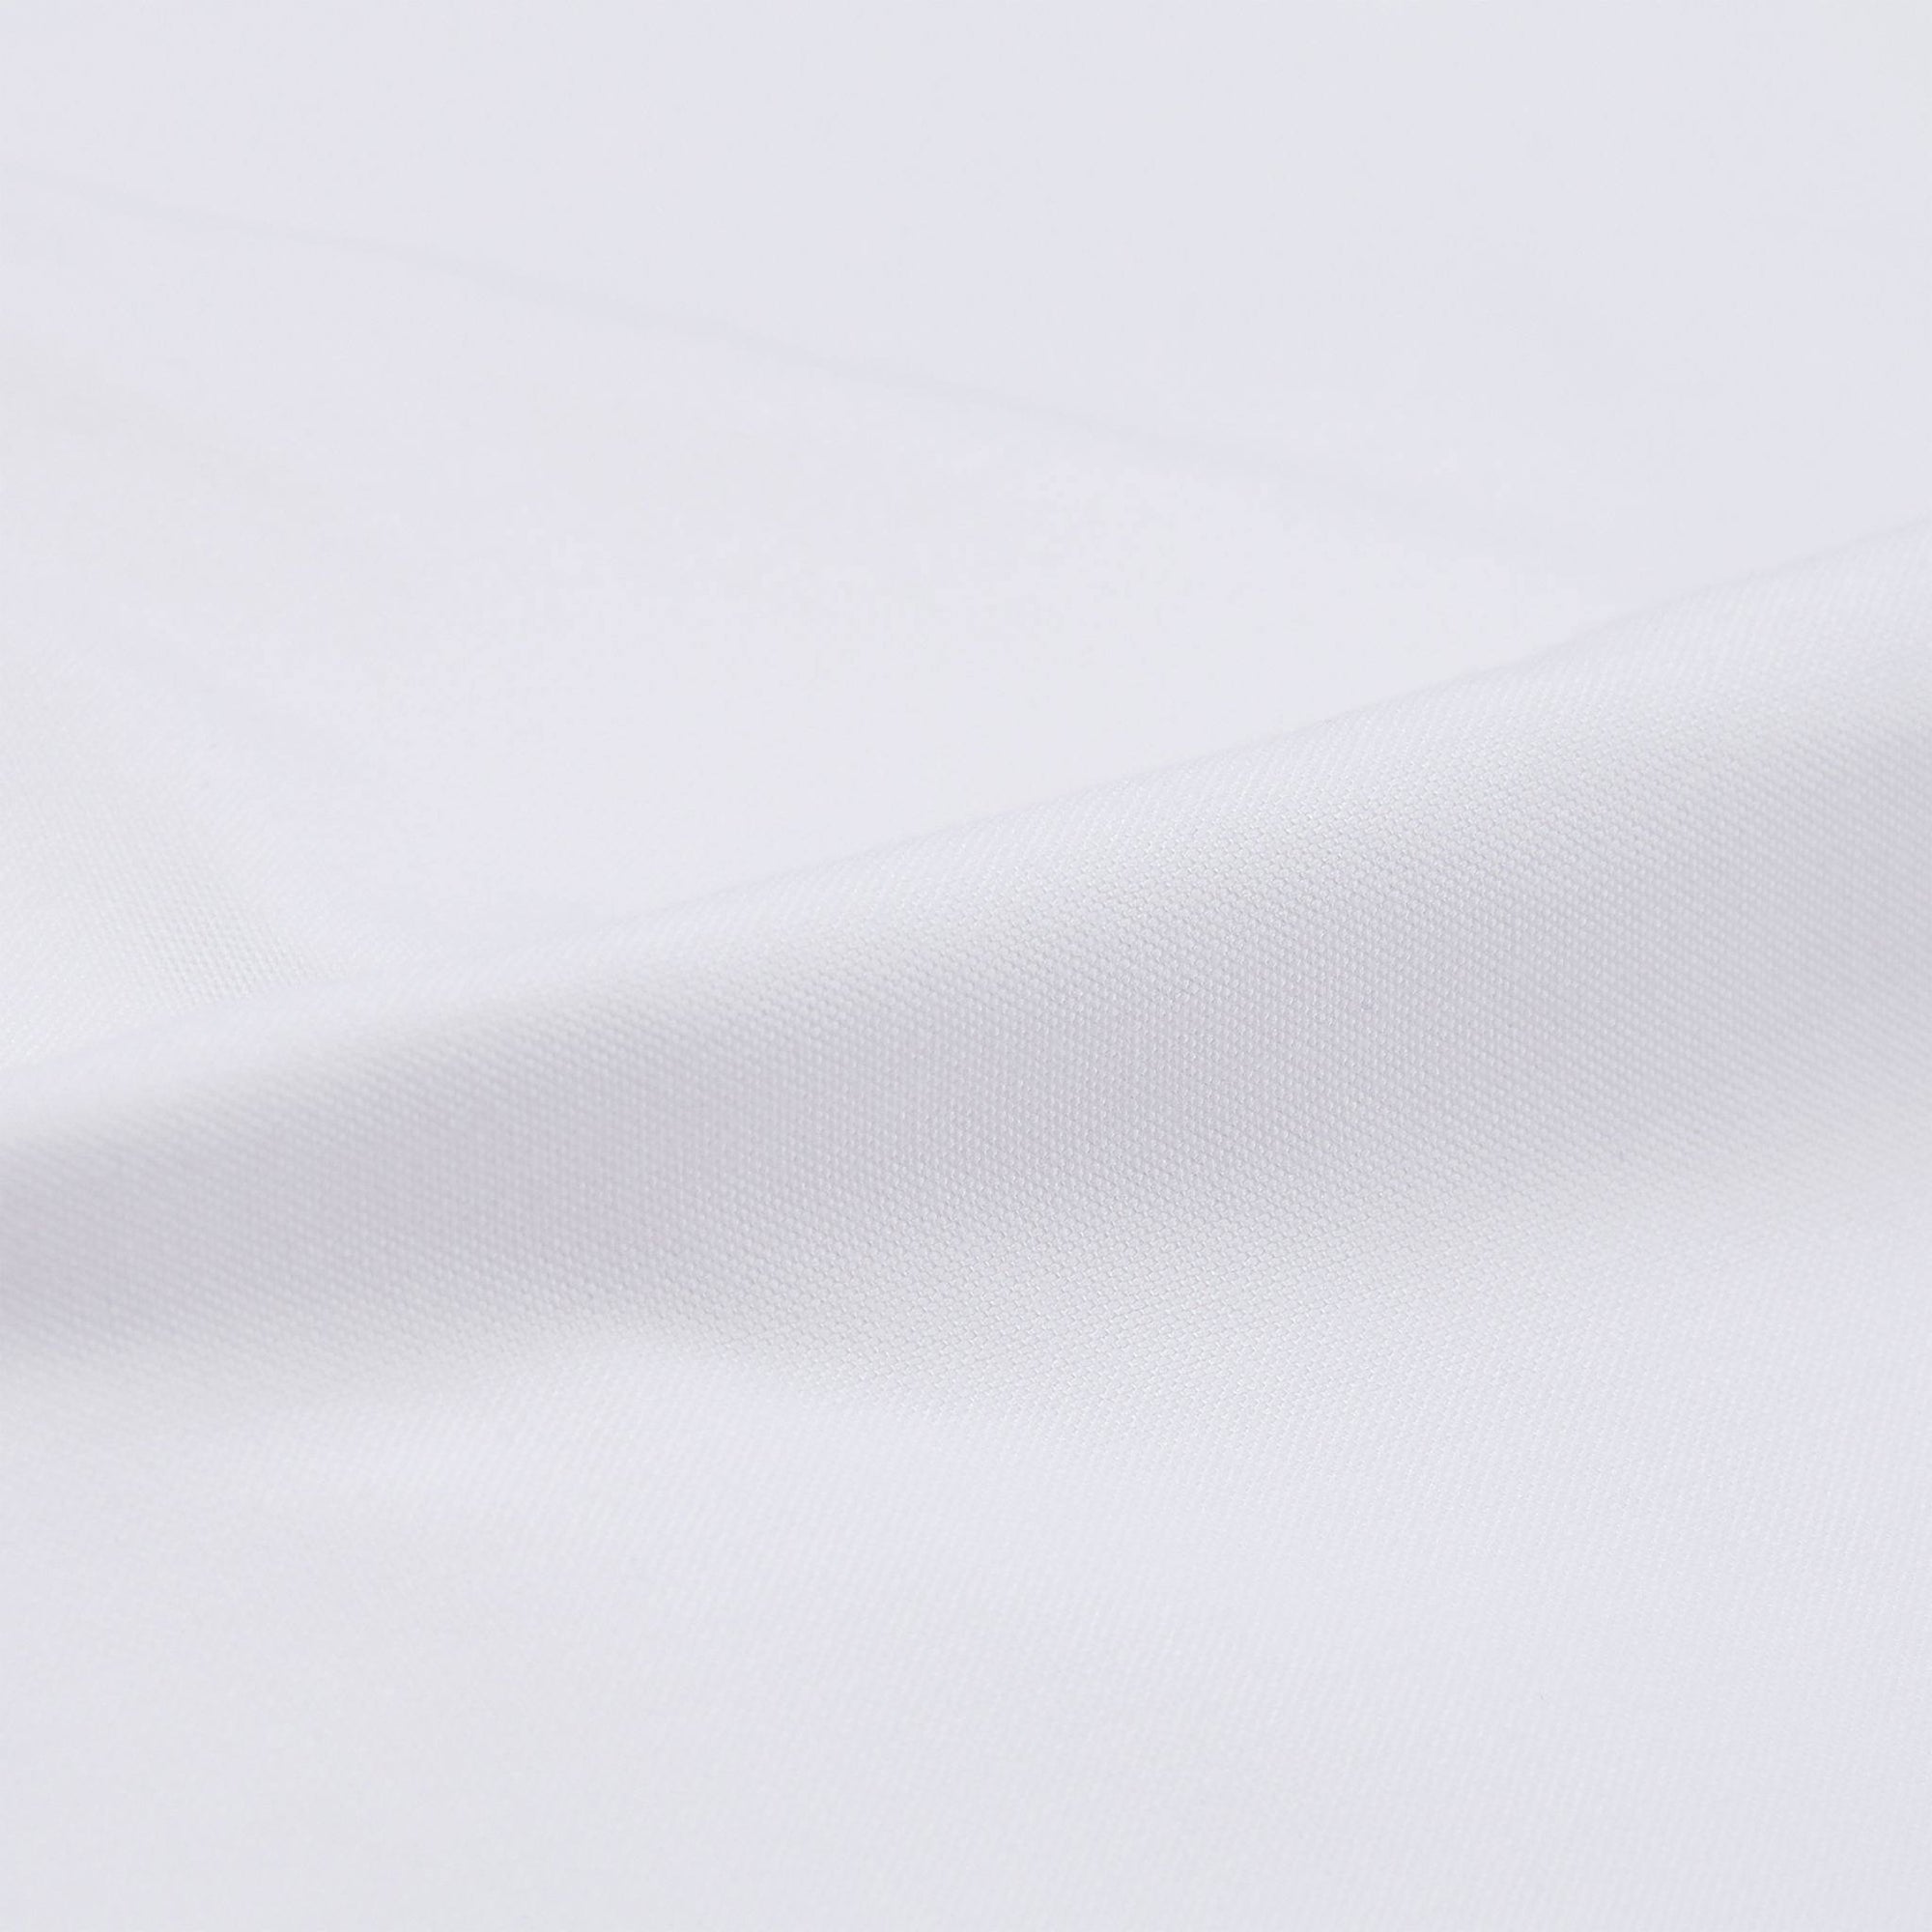 Birmingham - hvid skjorte – Skjorter – Sumisura